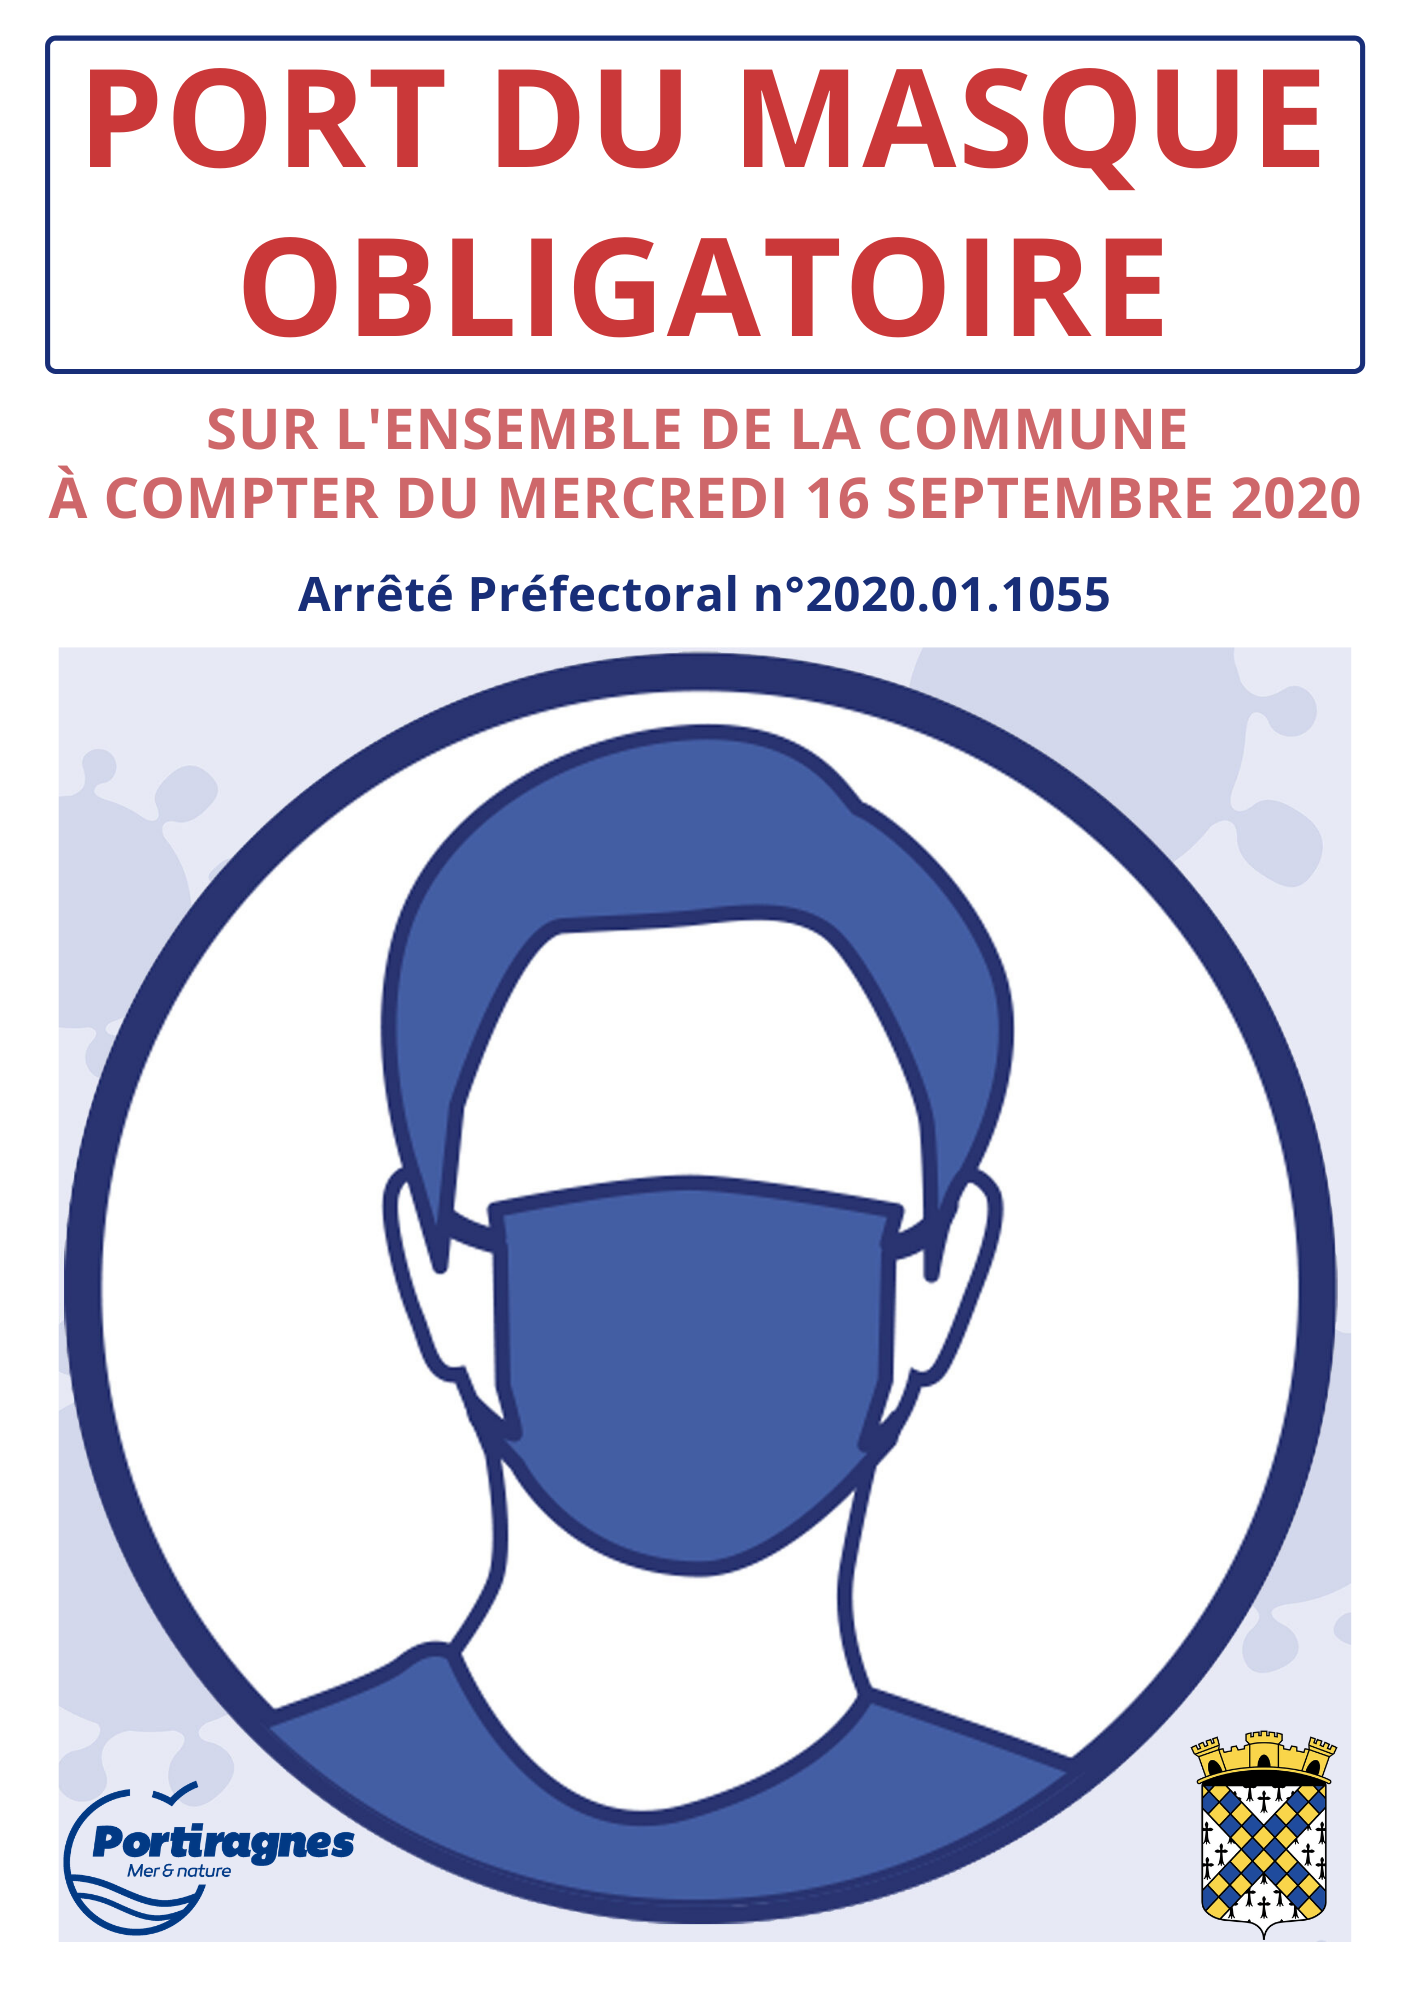 You are currently viewing COVID19 – Arrêté Préfectoral – Port du masque obligatoire jusqu’au 30 SEPTEMBRE